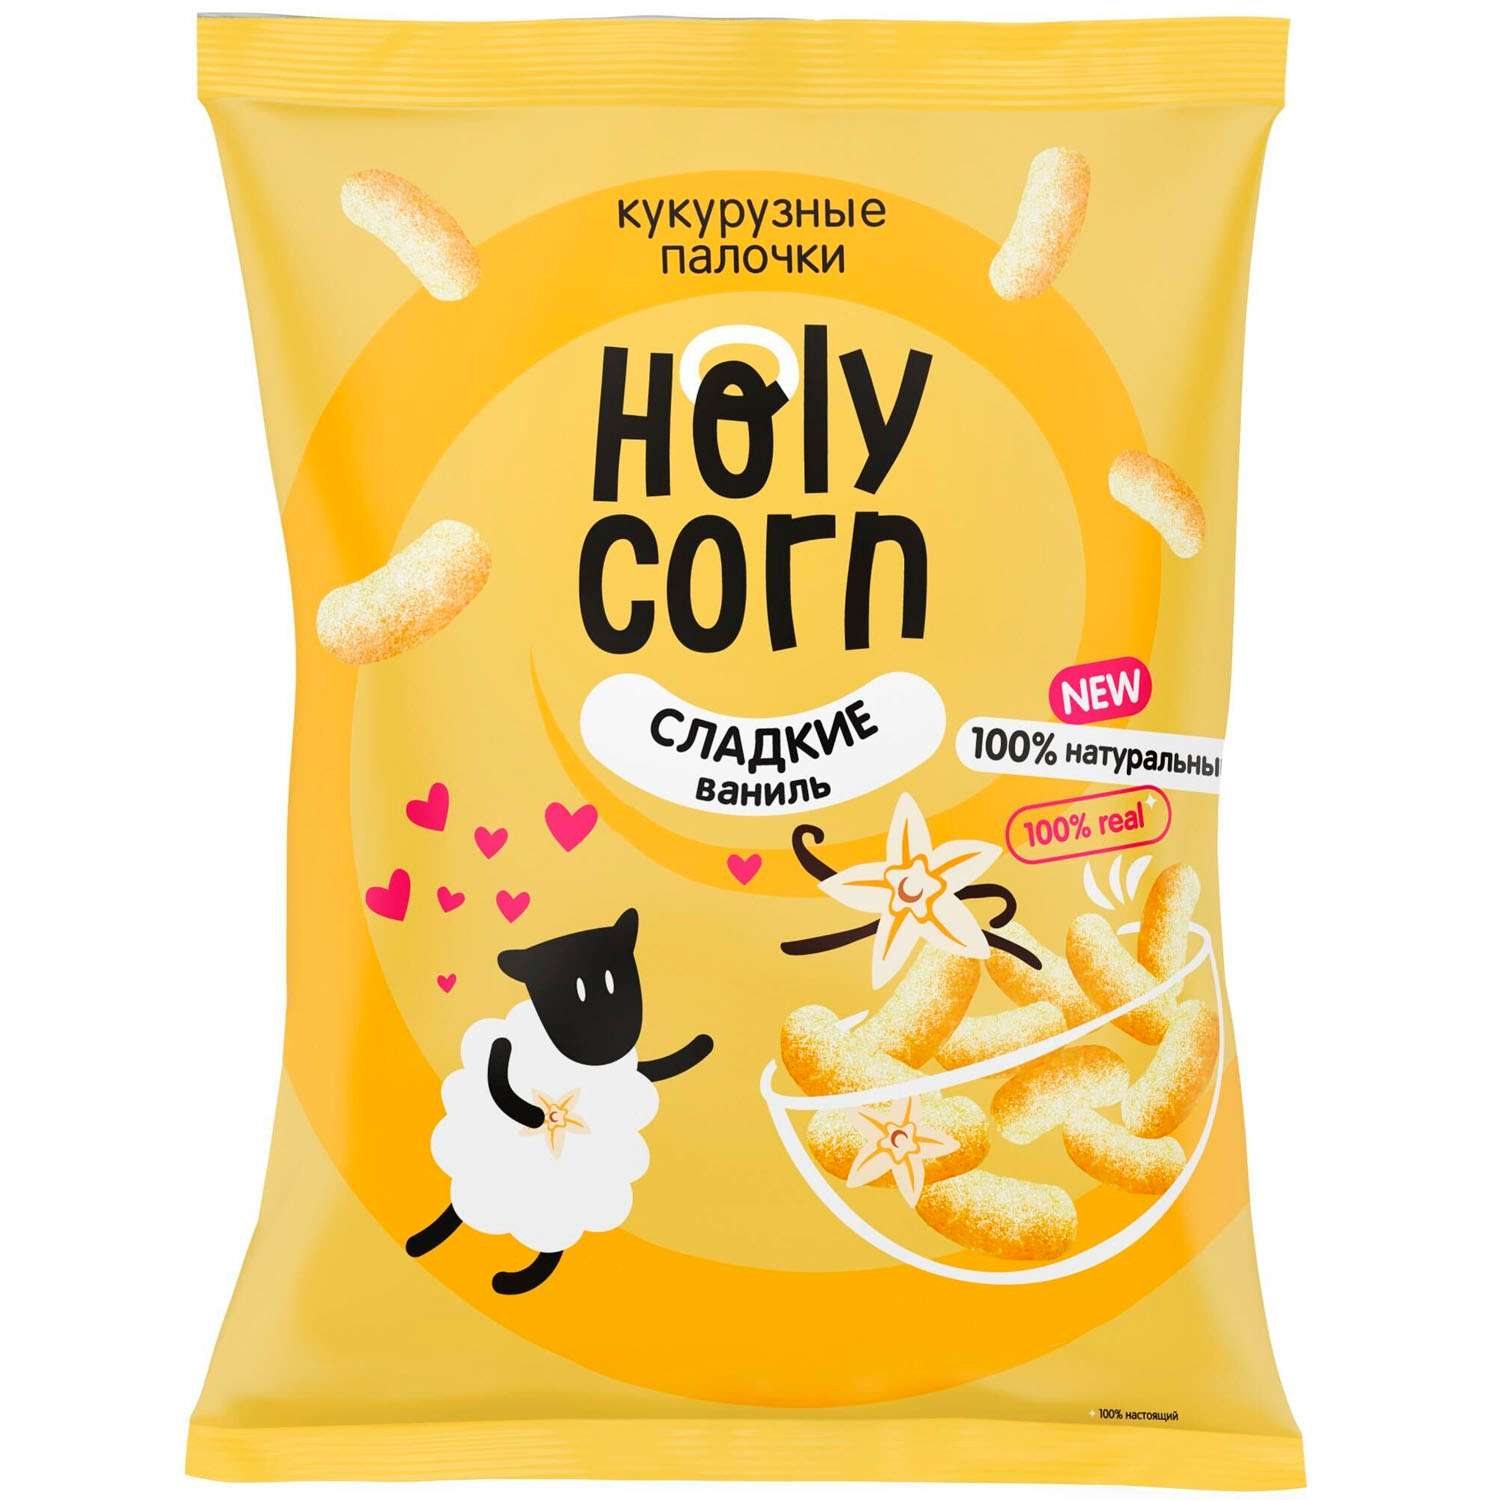 Снеки курузные Holy Corn сладкие 50г - фото 1